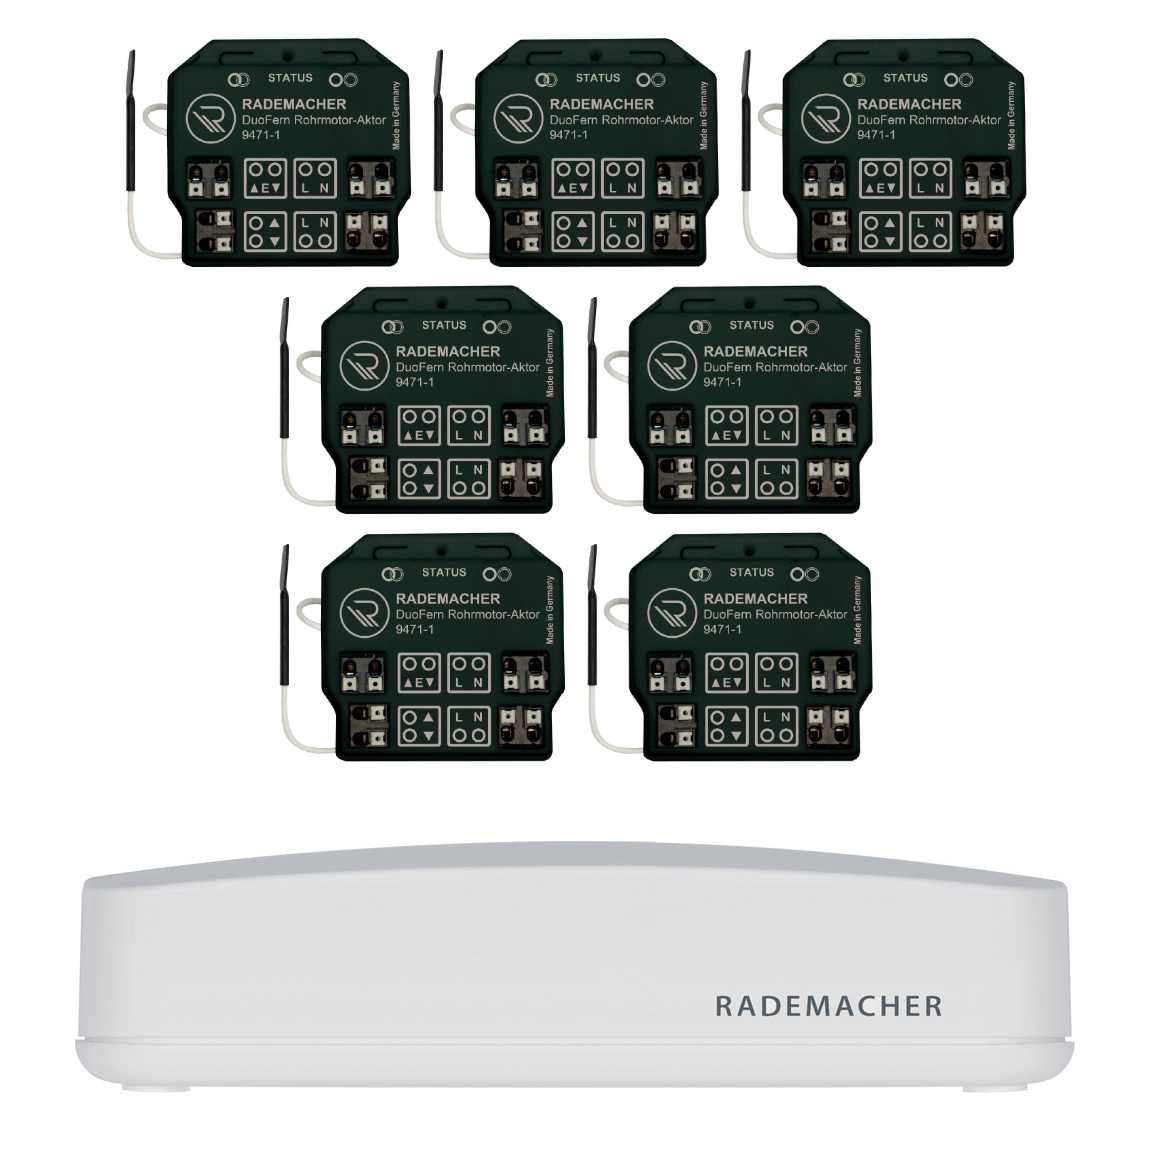 Rademacher HomePilot + DuoFern Rohrmotor-Aktor 7er-Set – Deal, Schnäppchen, sparen